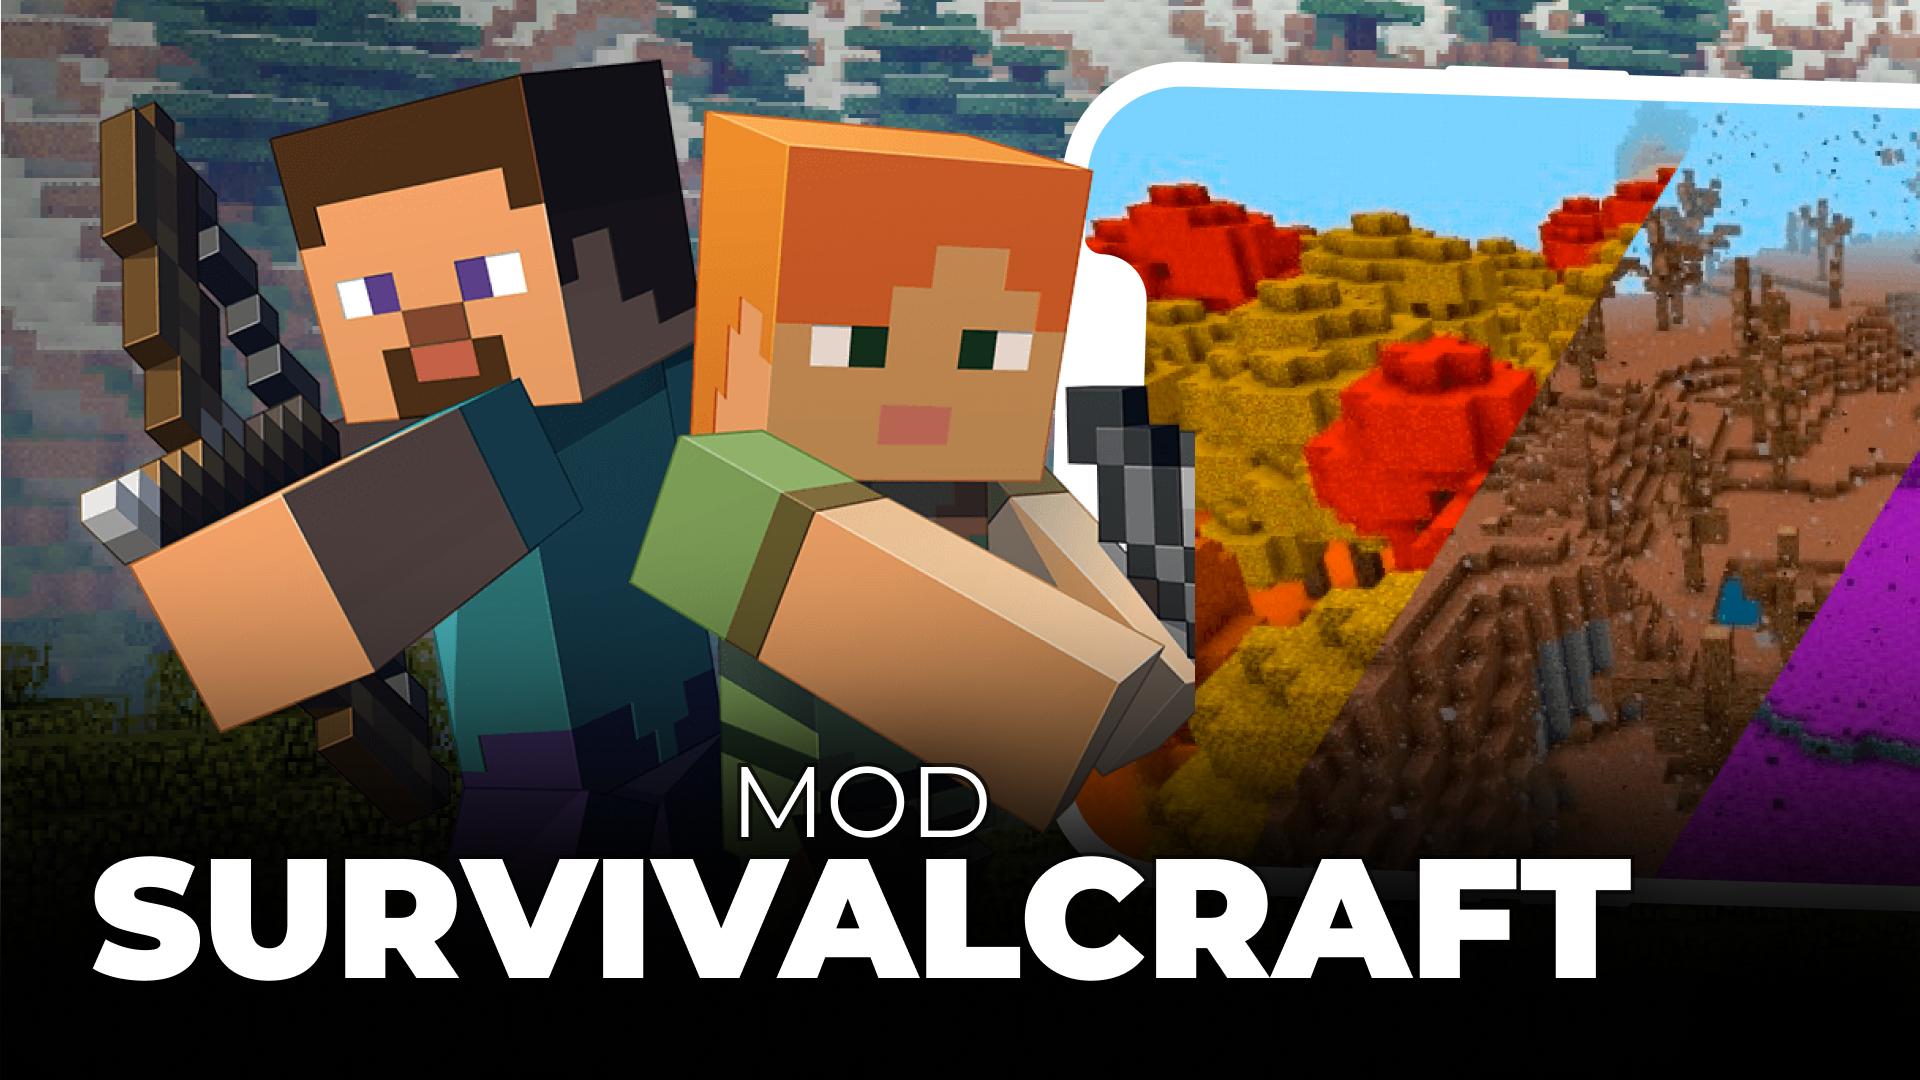 Survivalcraft 2 - Download